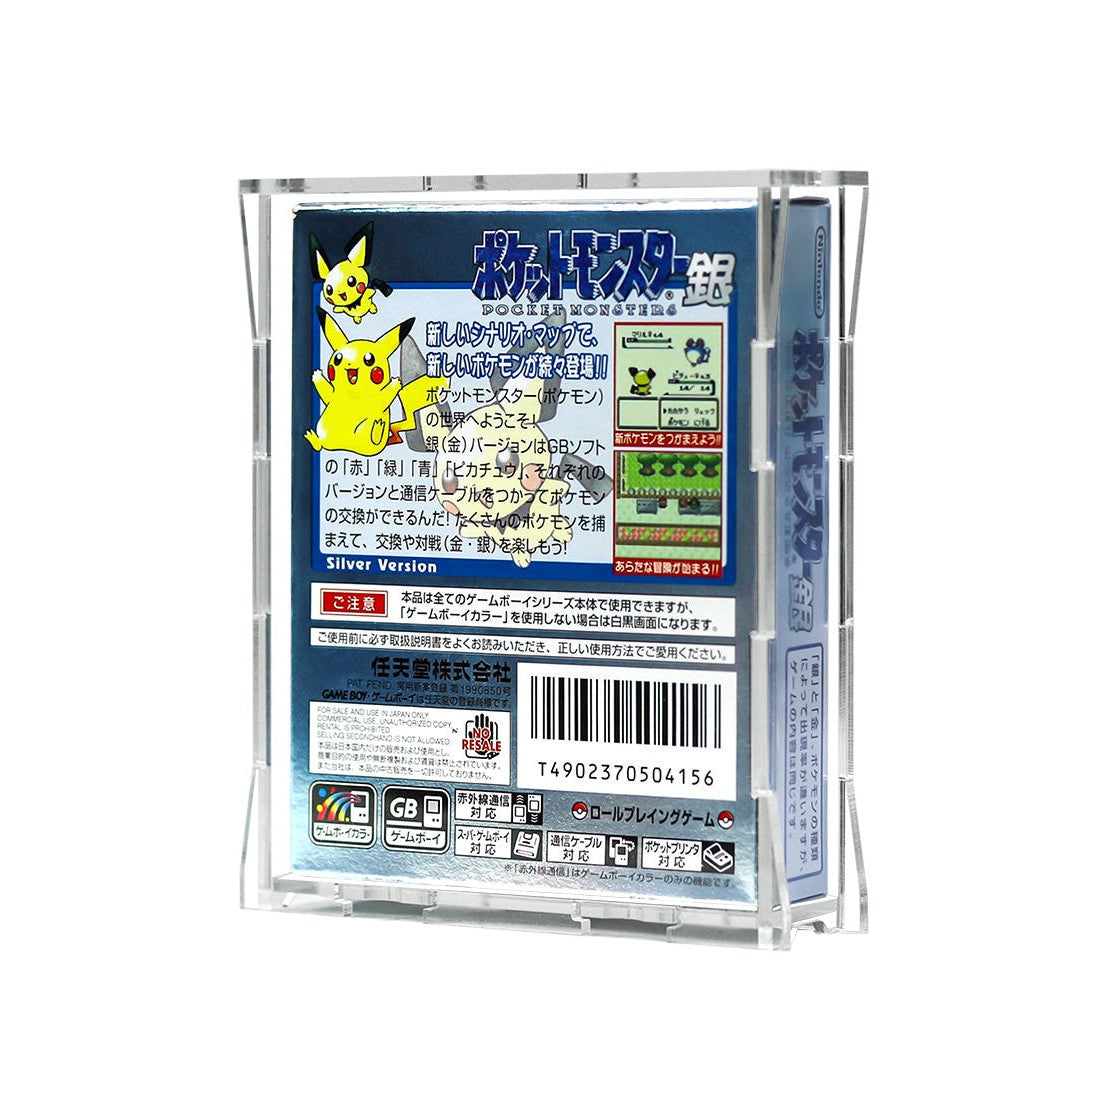 Protector para GameBoy® Color (Gamebox - Japan)-acrilico-exhibidor-caja-case-Decolecto